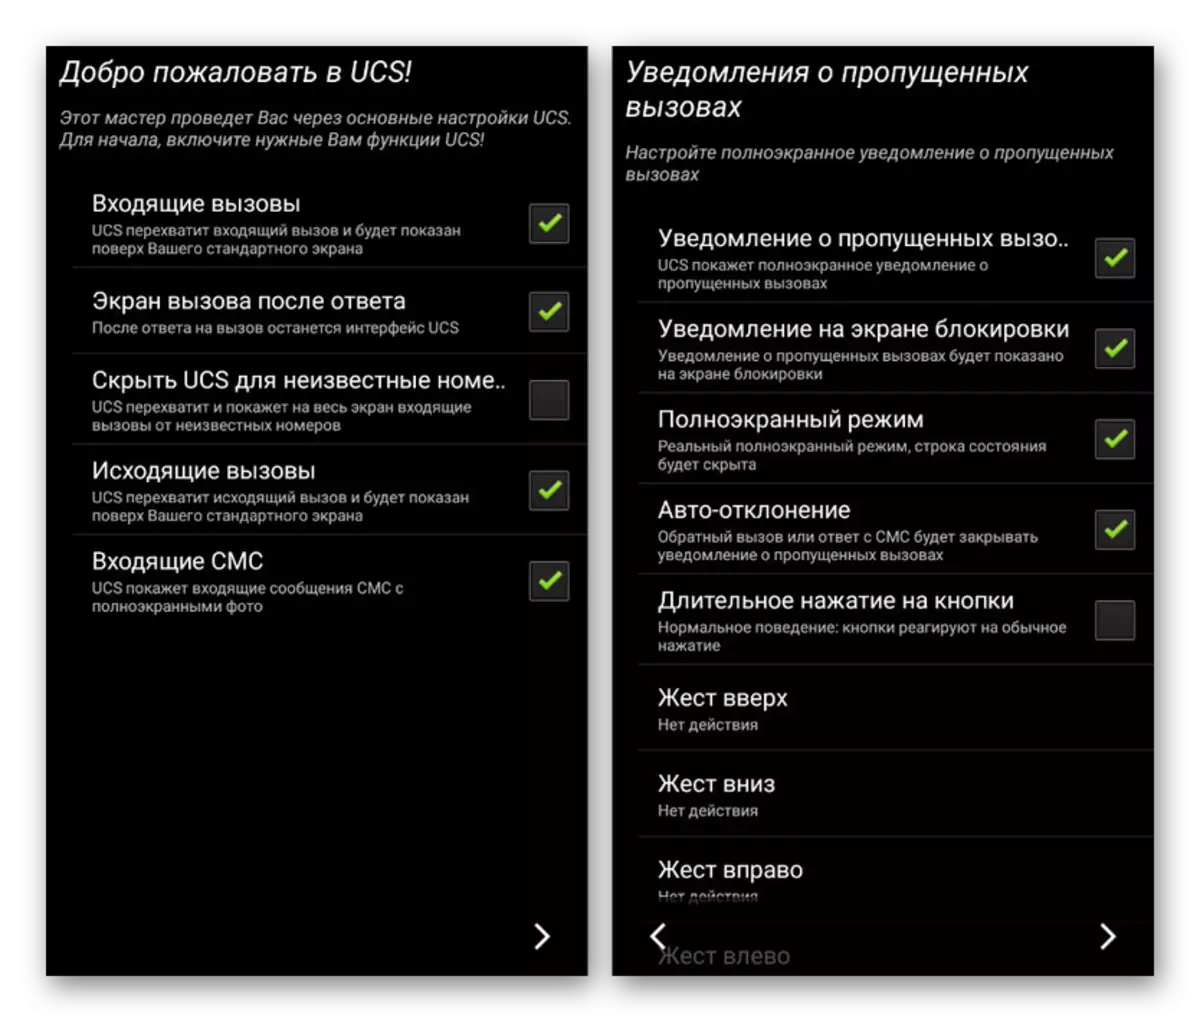 საწყისი პარამეტრები Ultimate Call ეკრანზე Android- ზე